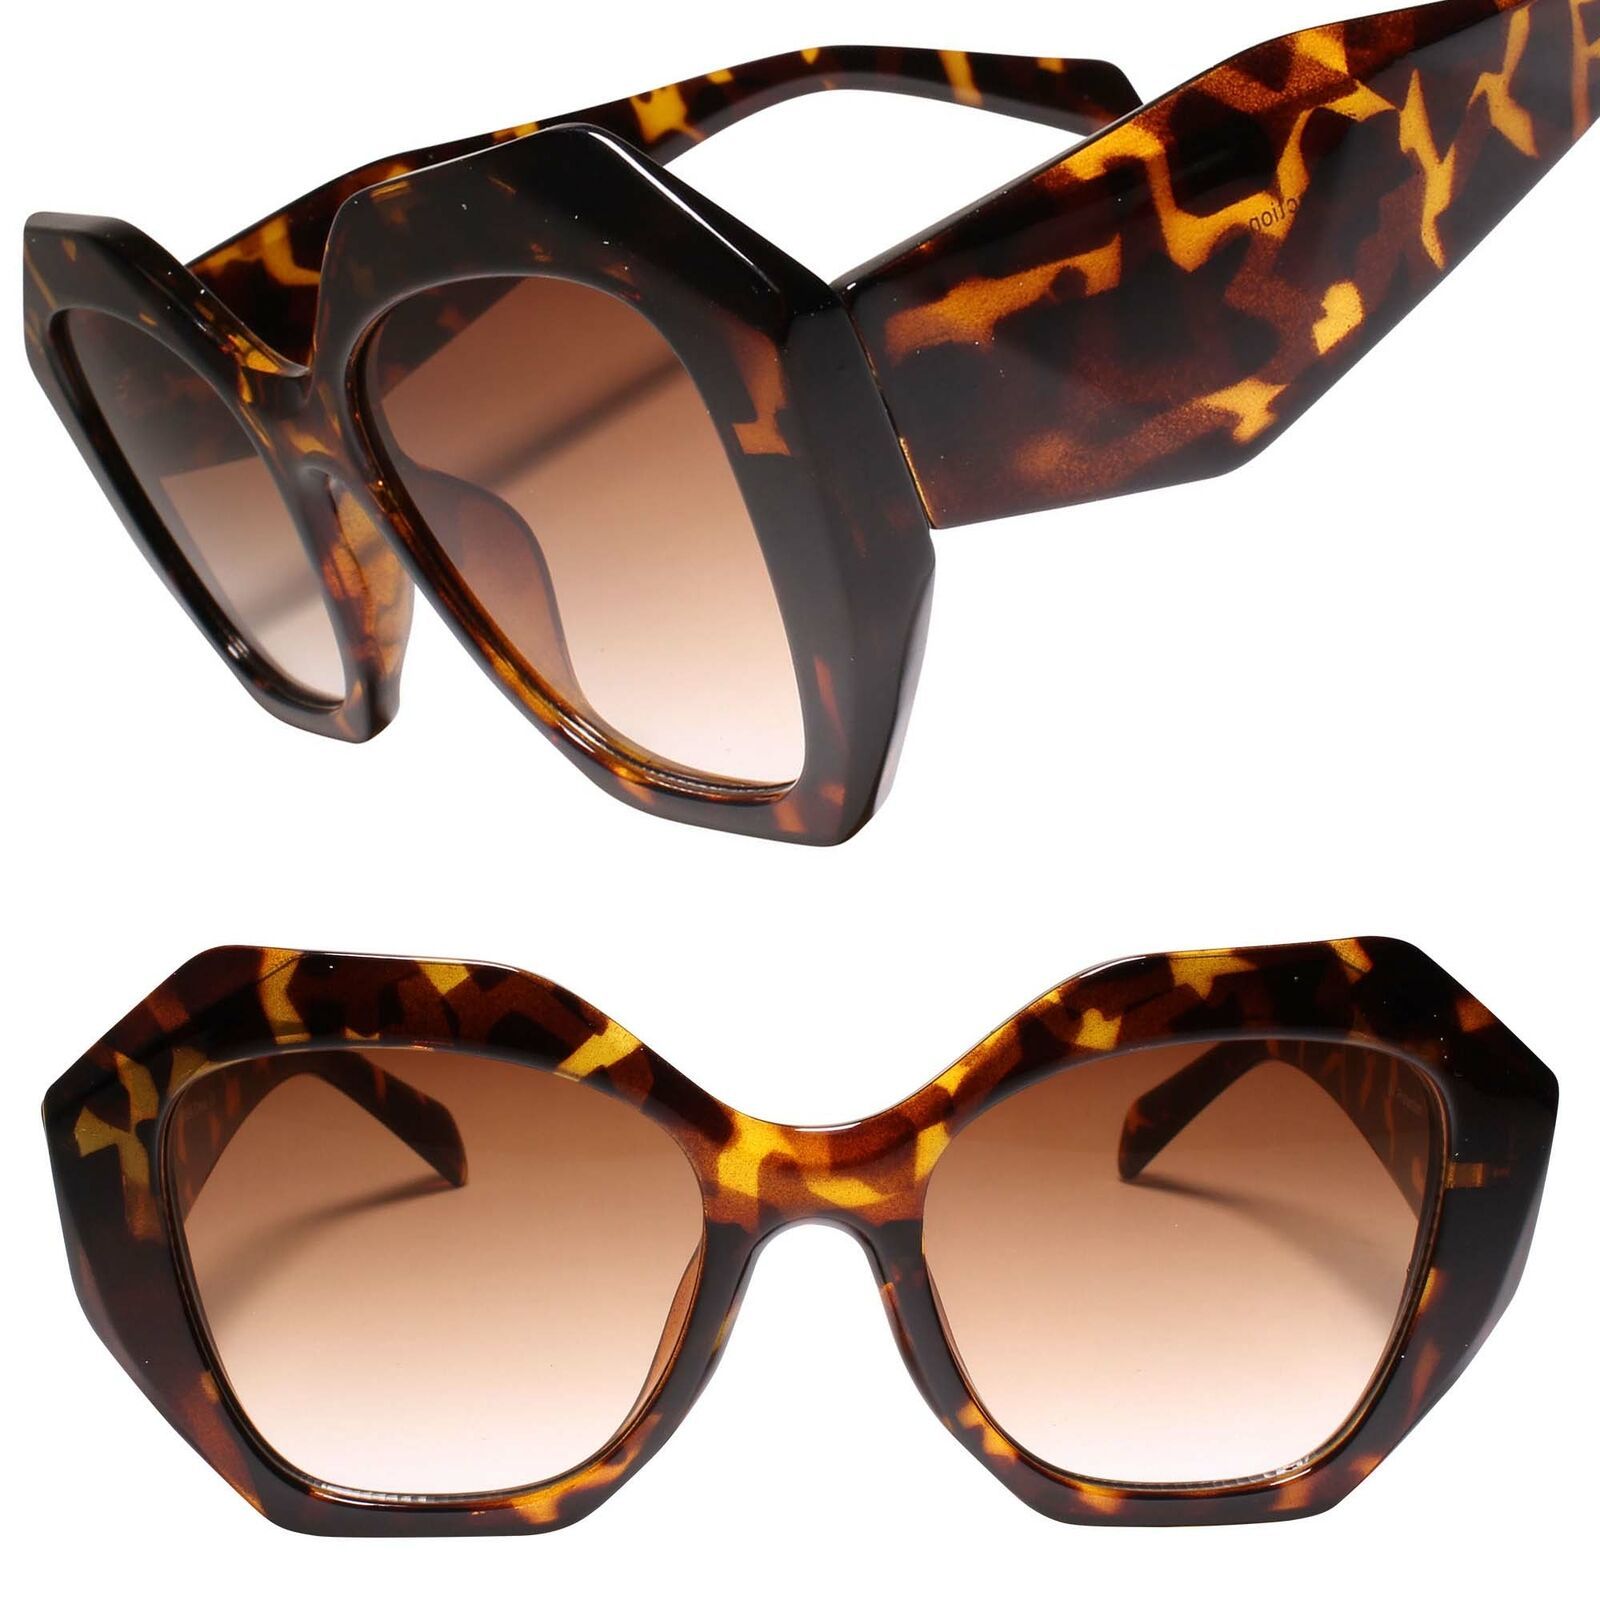 Sophisticated Oversized Geometric Sunglasses Exotic Big Frame Tortoise Shades  | eBay | eBay US